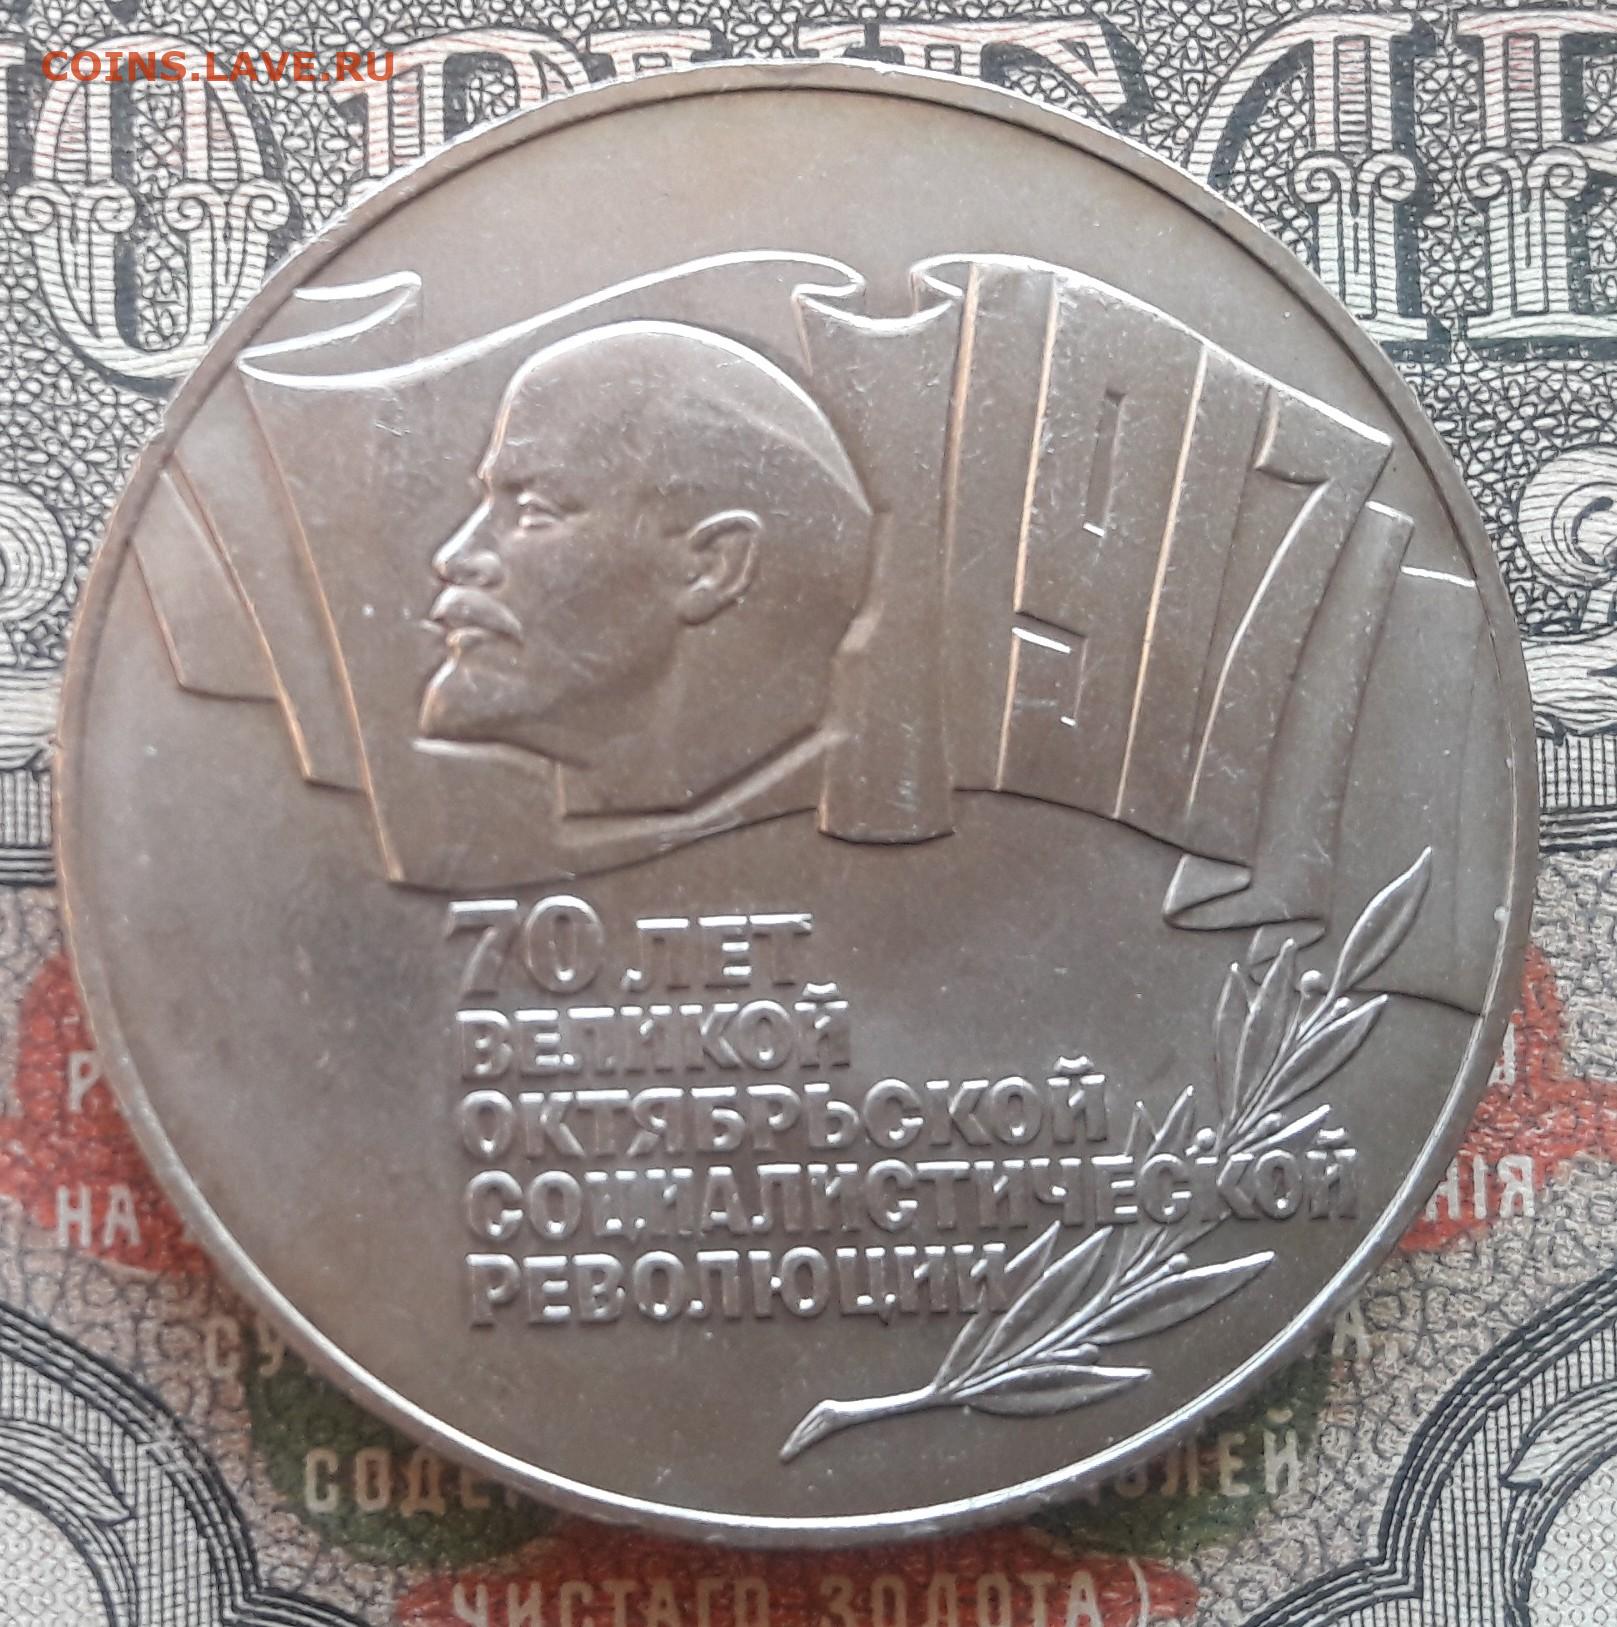 5 рублей 70 лет. Монета 70 года до нашей эры.